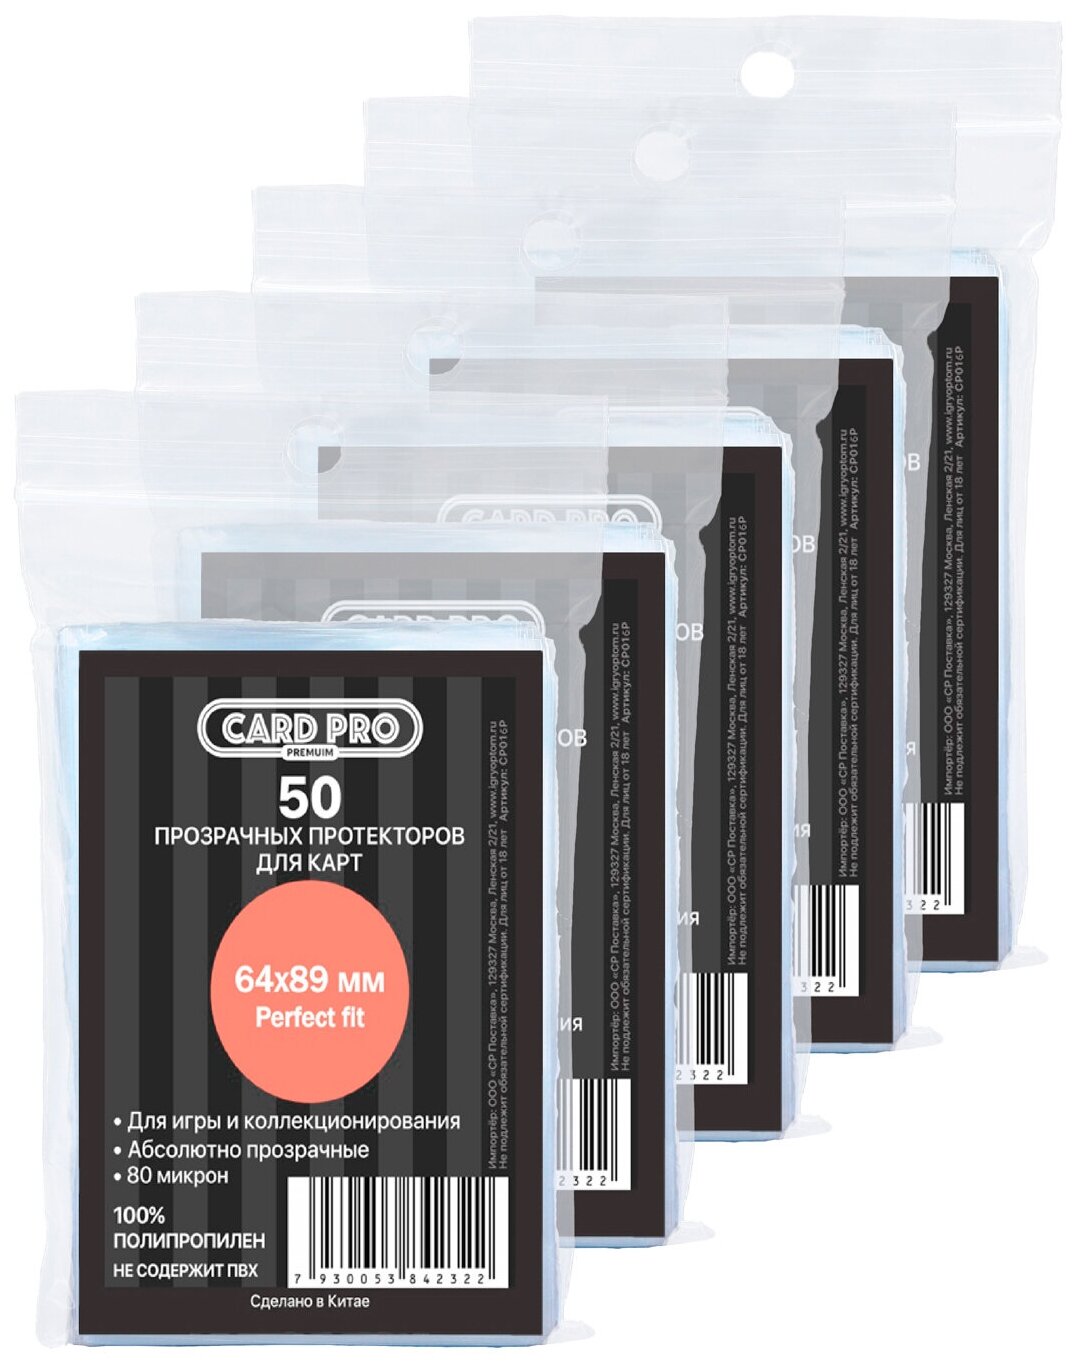 Прозрачные протекторы Card-Pro PREMIUM Perfect Fit 64x89 мм (5 пачек по 50 шт.) - для карт MTG, Pokemon